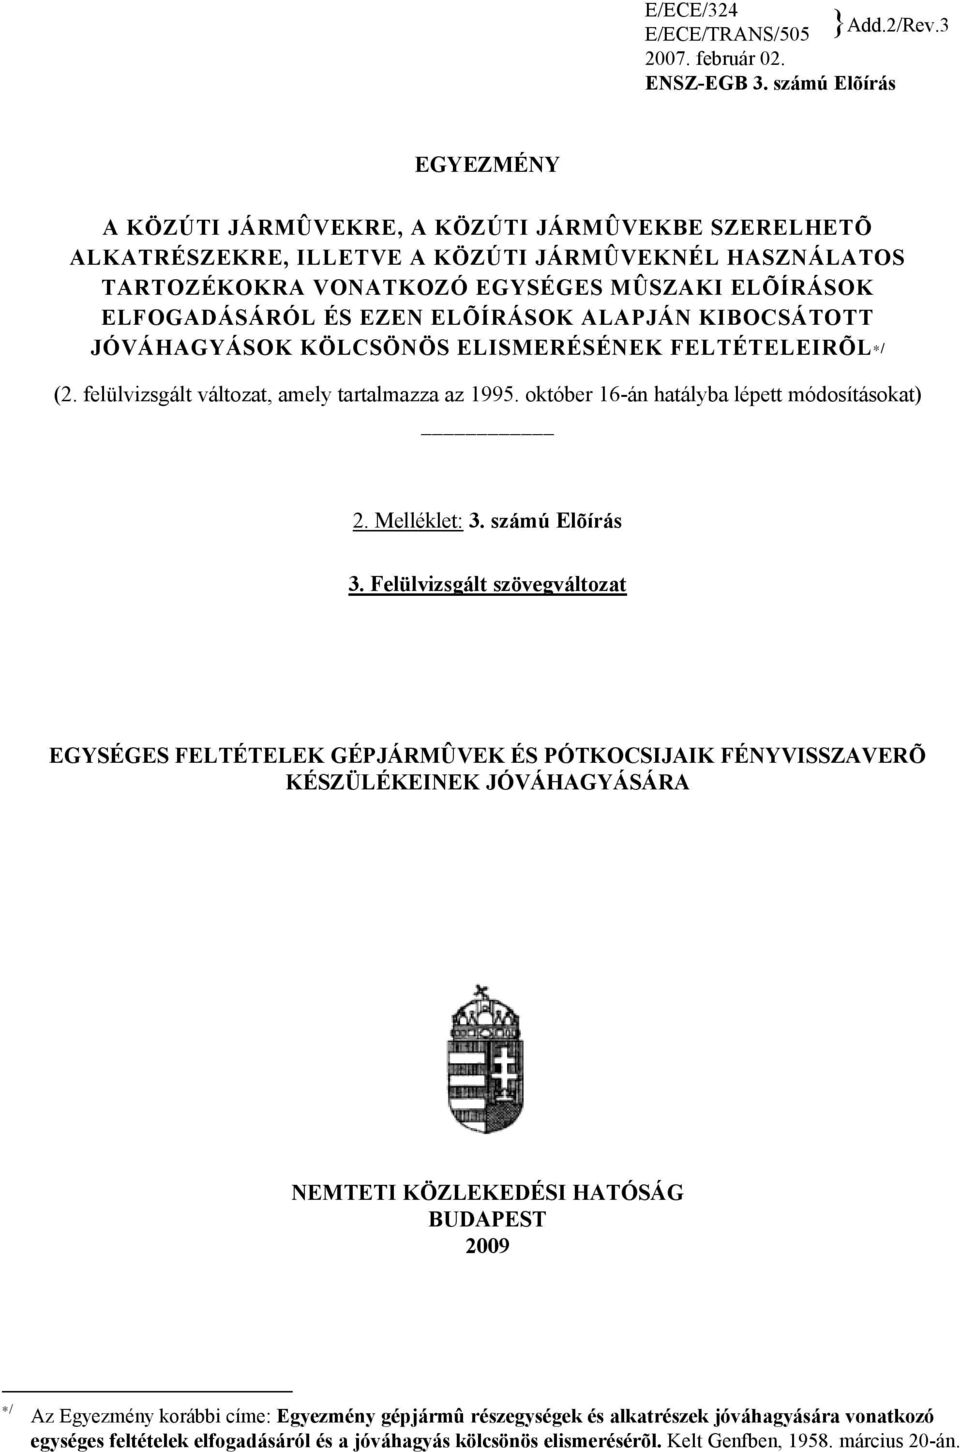 EZEN ELÕÍRÁSOK ALAPJÁN KIBOCSÁTOTT JÓVÁHAGYÁSOK KÖLCSÖNÖS ELISMERÉSÉNEK FELTÉTELEIRÕL*/ (2. felülvizsgált változat, amely tartalmazza az 1995. október 16-án hatályba lépett módosításokat) 2.